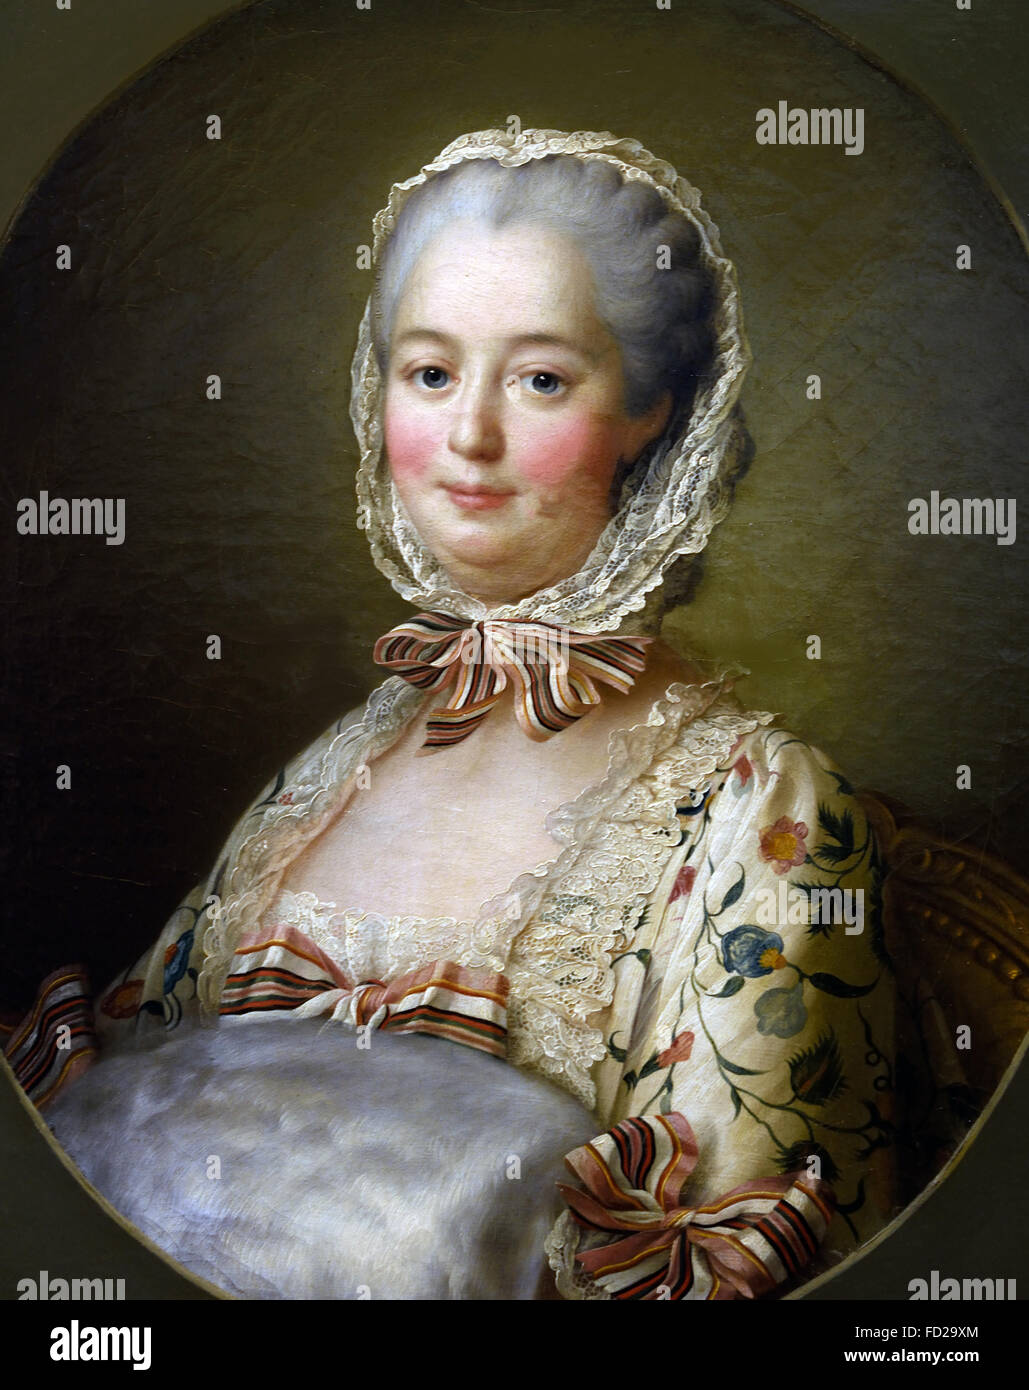 François Hubert Drouais (1725-1775): Jeanne Antoinette Poisson, Marquise de Pompadour, conosciuto anche come Madame de Pompadour 1721 - 1764 padrona di Re Luigi XV Francia - Francese Foto Stock